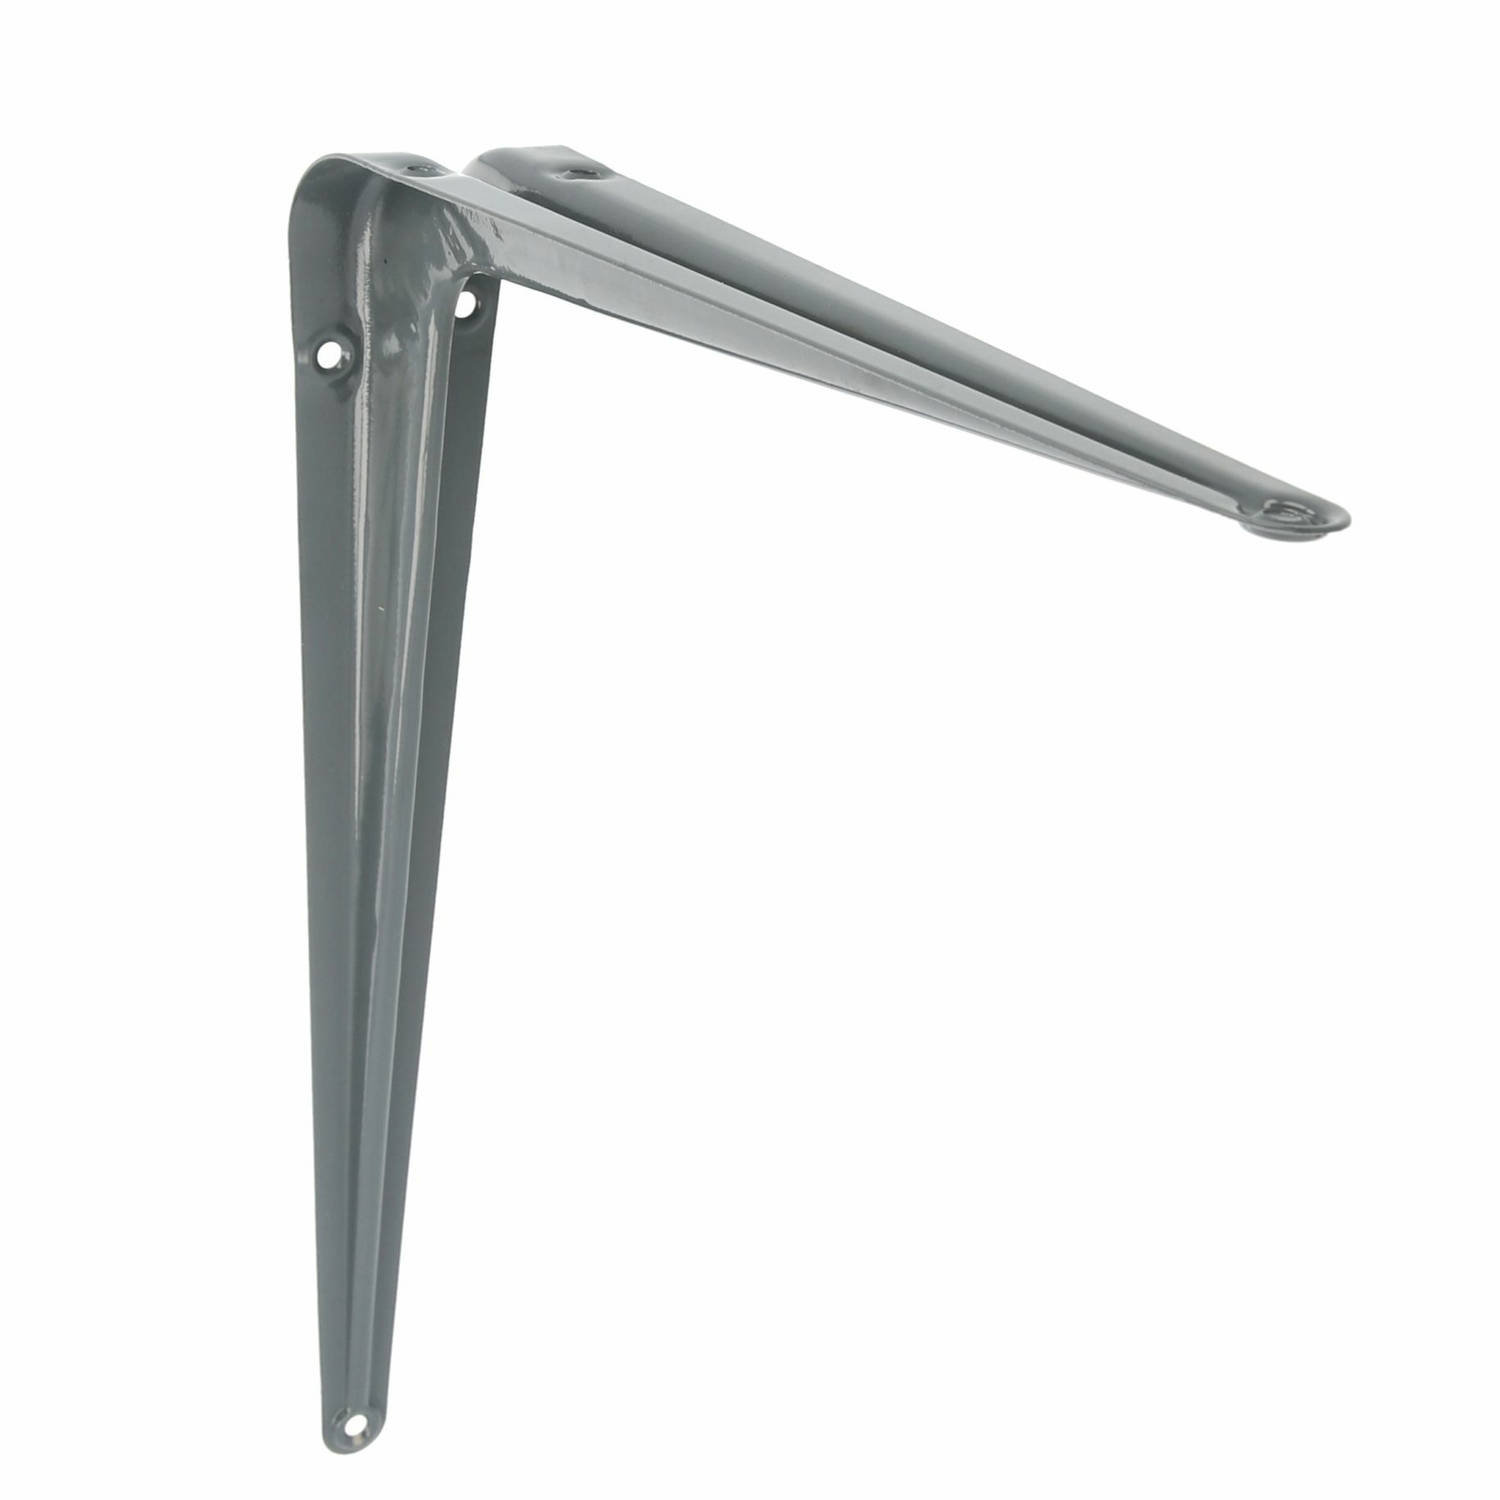 AMIG Plankdrager/planksteun van metaal - gelakt grijs - H300 x B250 mm